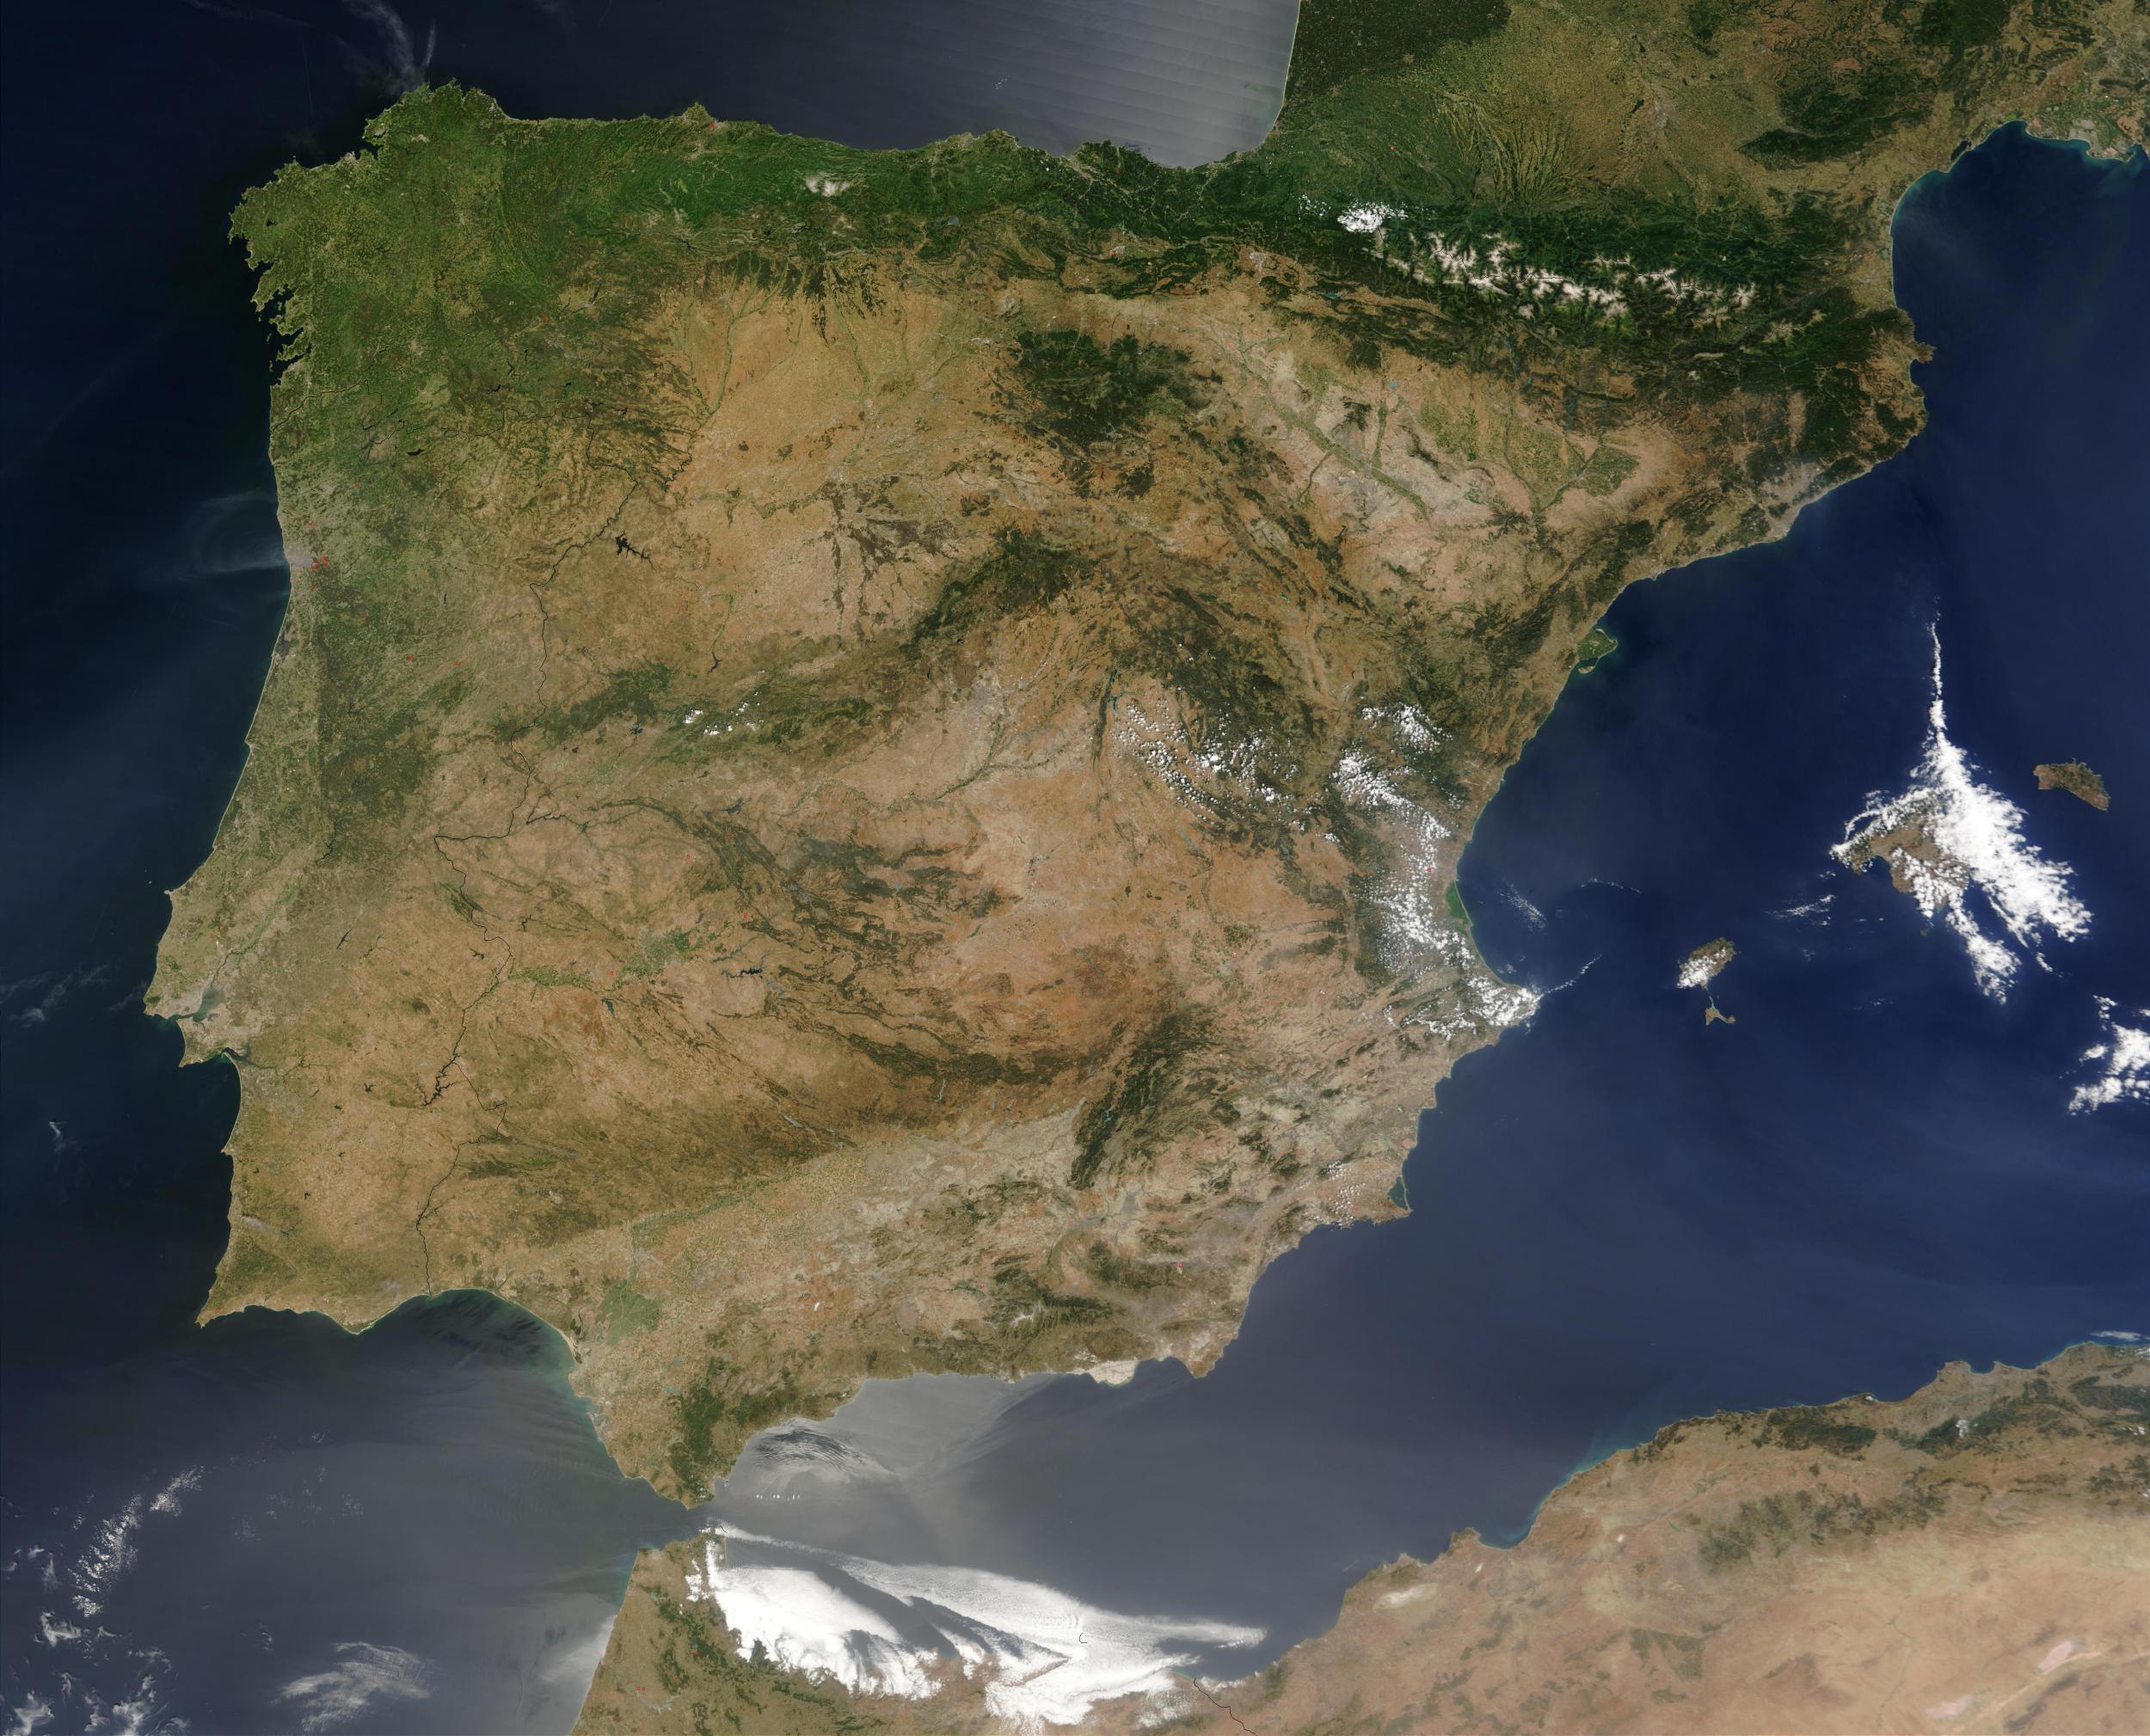 Mapa_Satelital_de_Espana.jpg